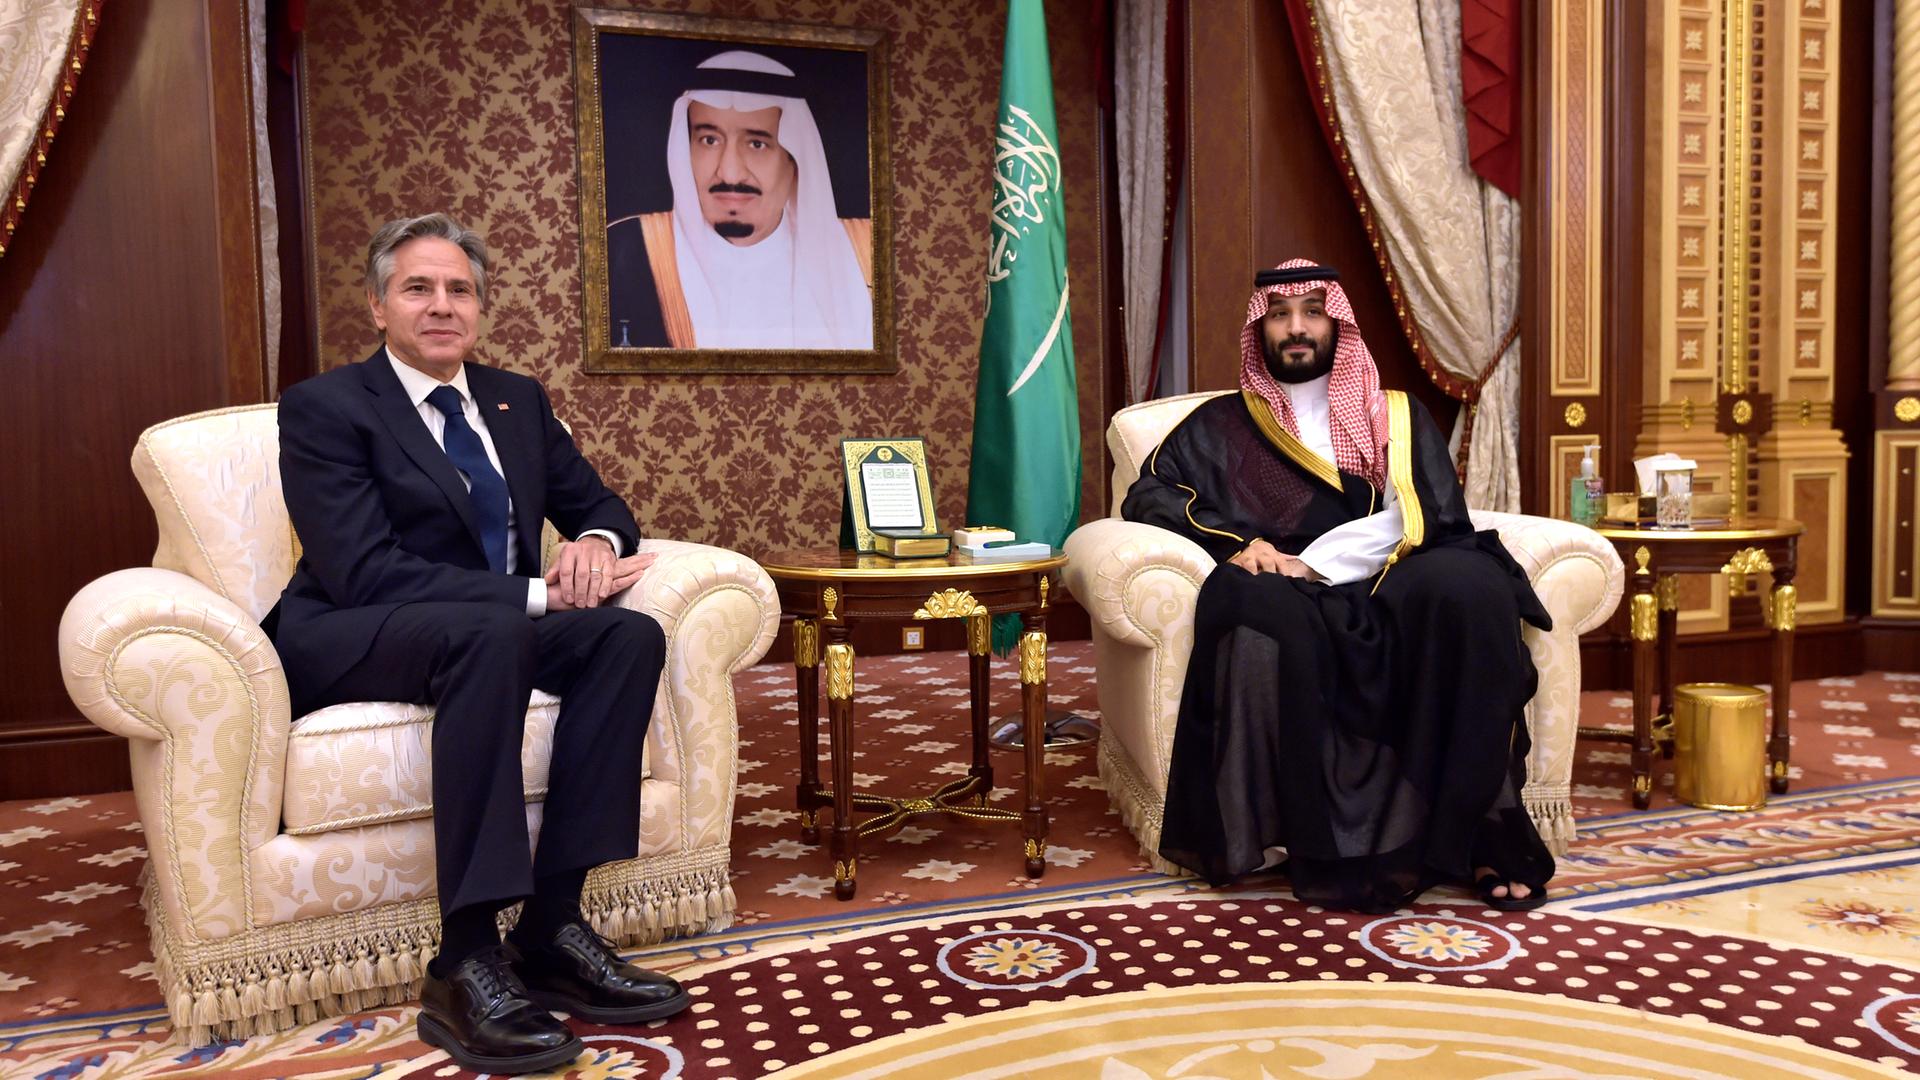 US-Außenminister Blinken und der saudische Kronprinz bin Salaman sitzen - sich leicht zugeneigt - in Sesseln. Im Hintergrund sind das Porträt eines früheren Herrschers und die saudische Flagge zu sehen.